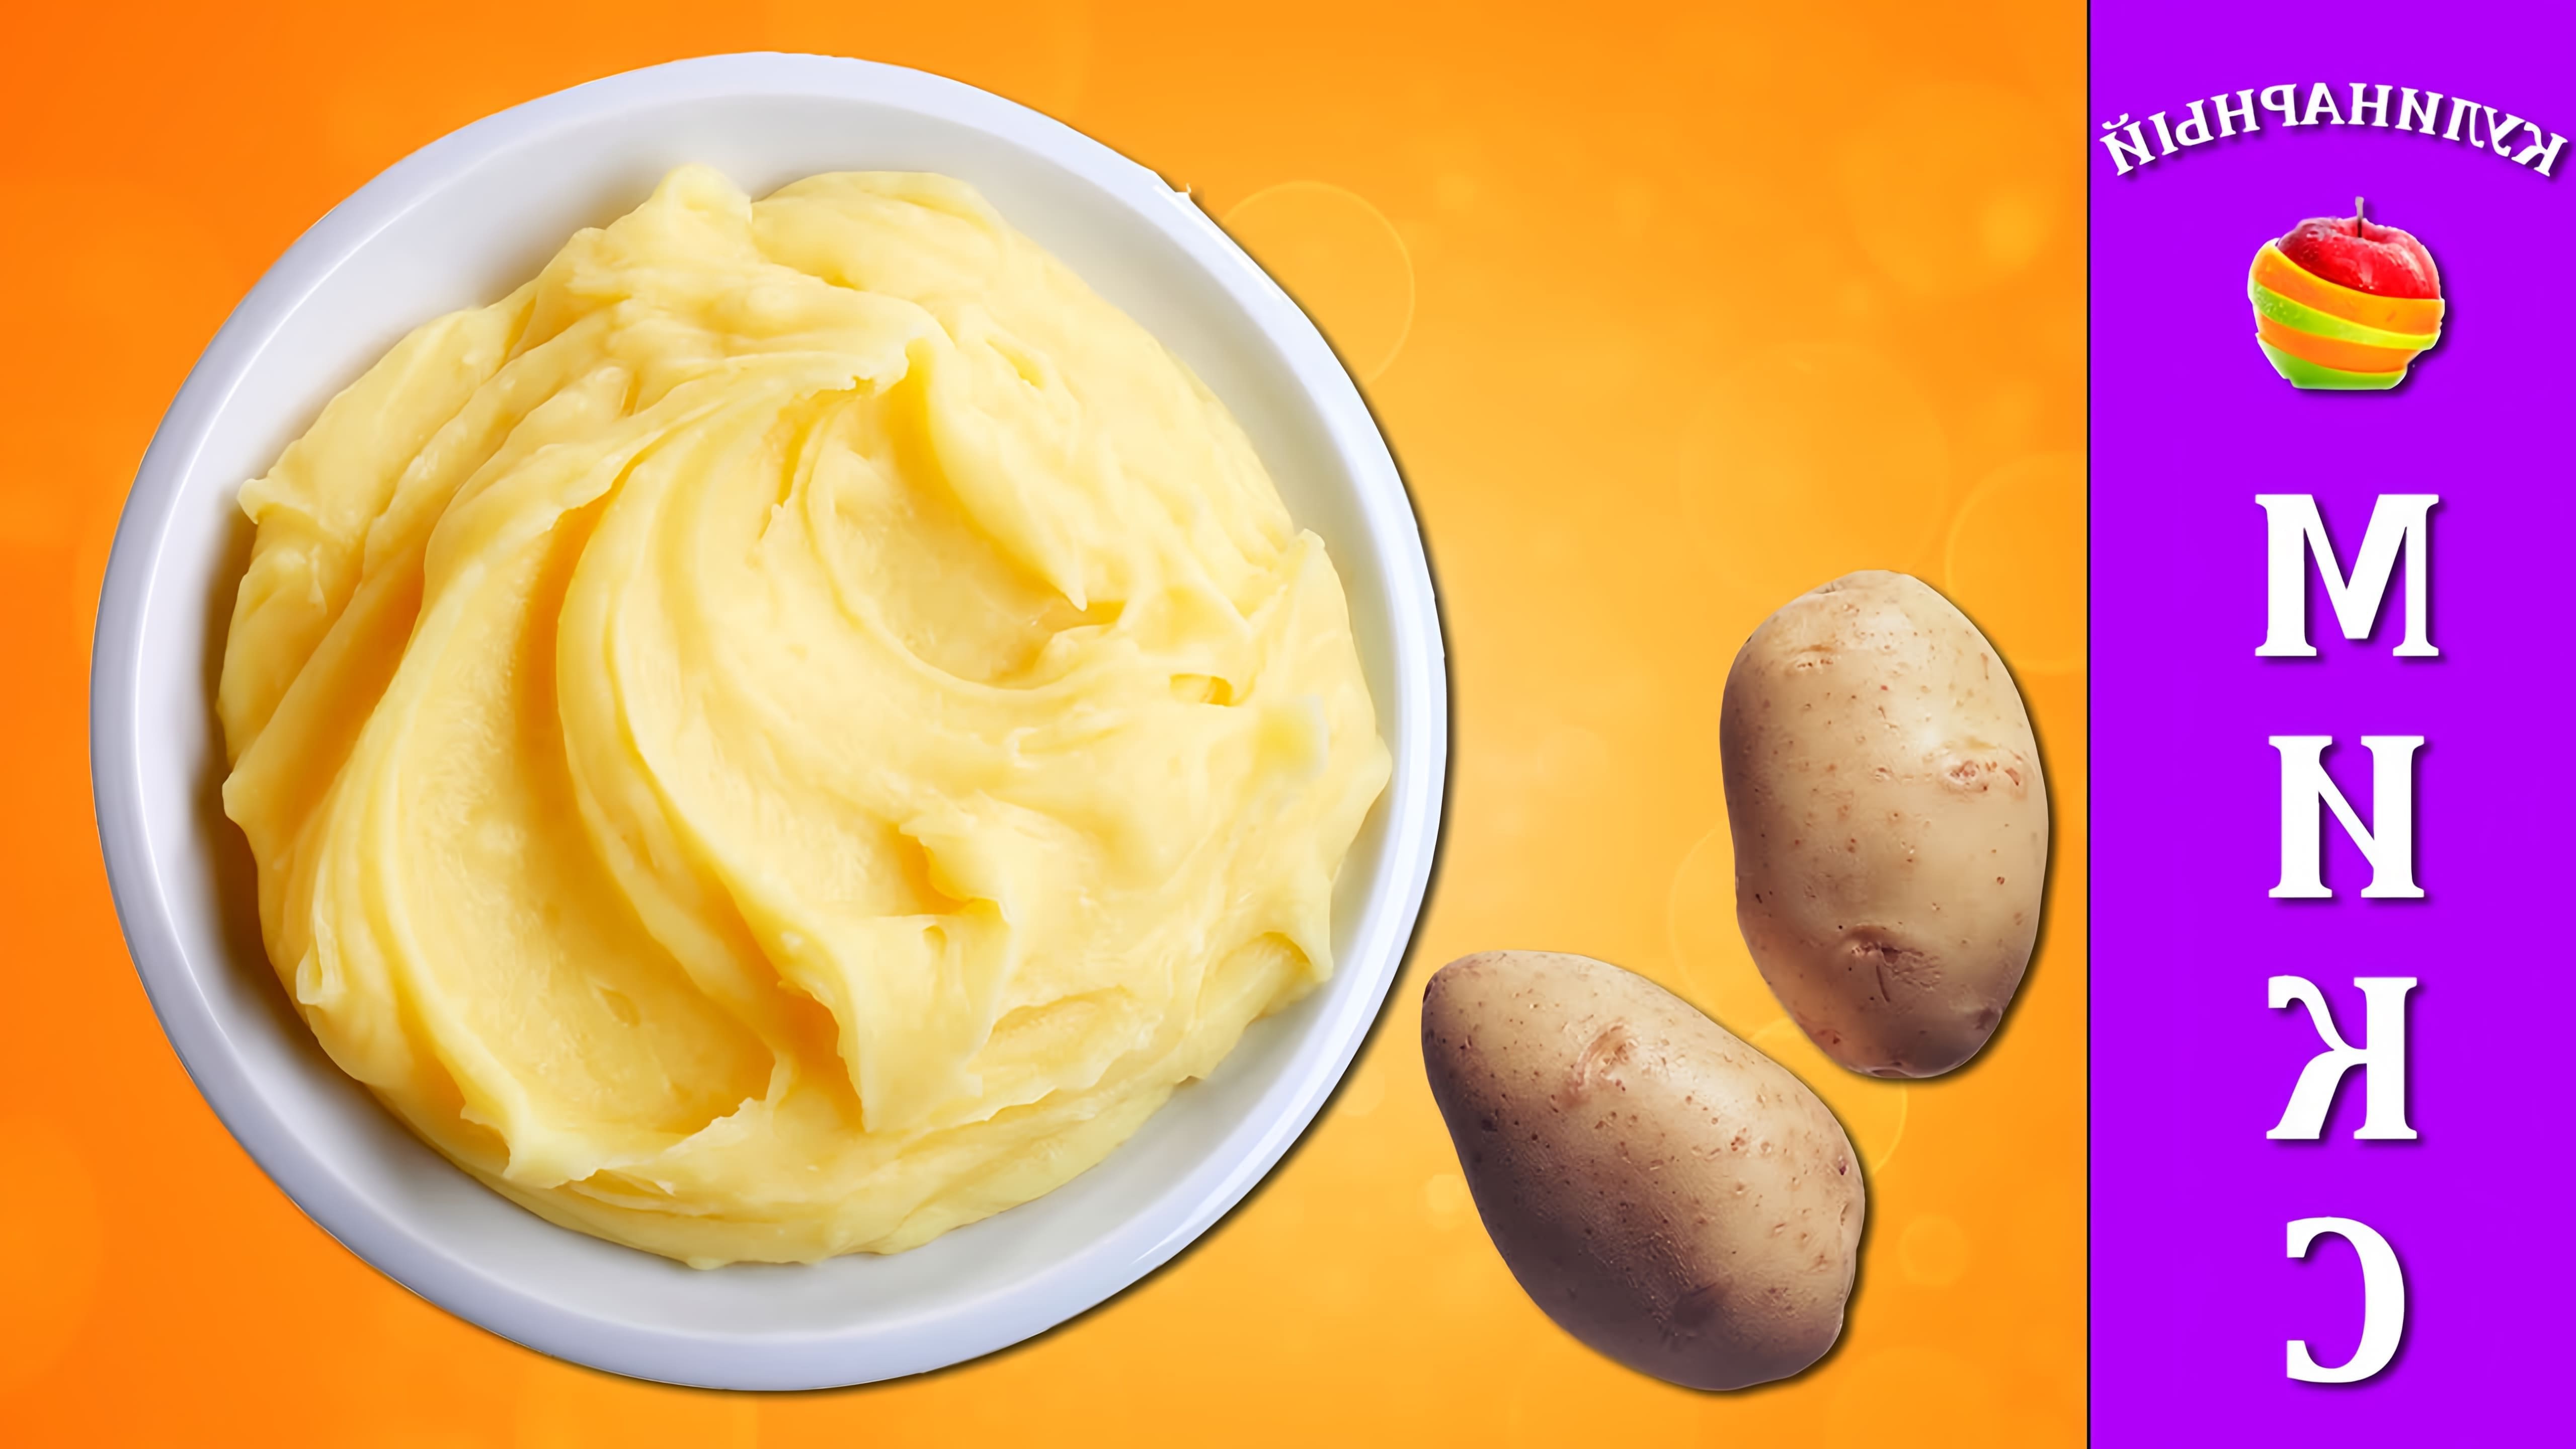 В этом видео демонстрируется рецепт приготовления картофельного пюре без комочков